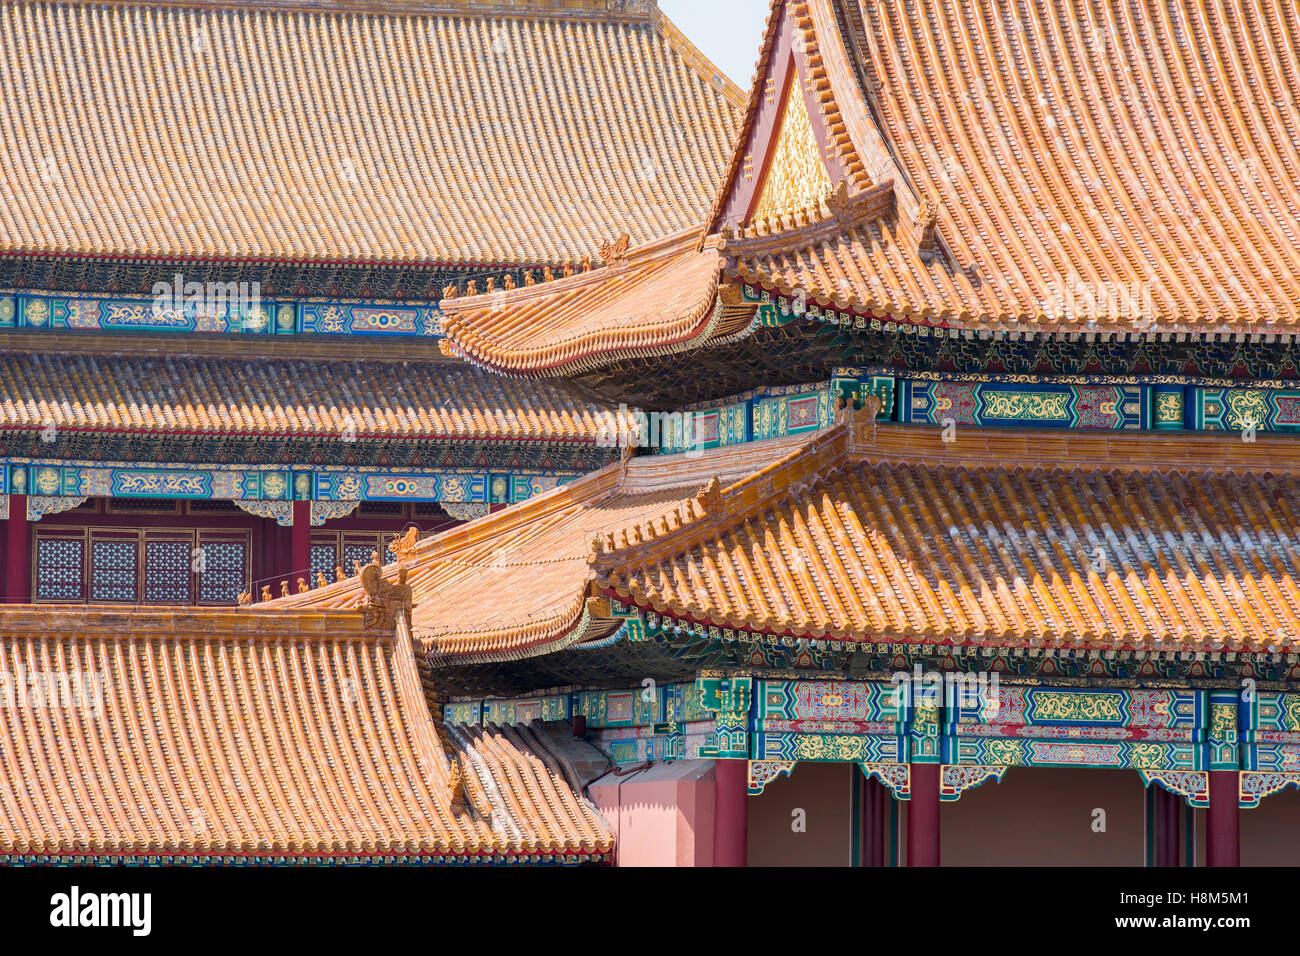 Pechino Cina - dettaglio del tetto ornato e architettura del Museo Palazzo situato nella Città Proibita. Foto Stock